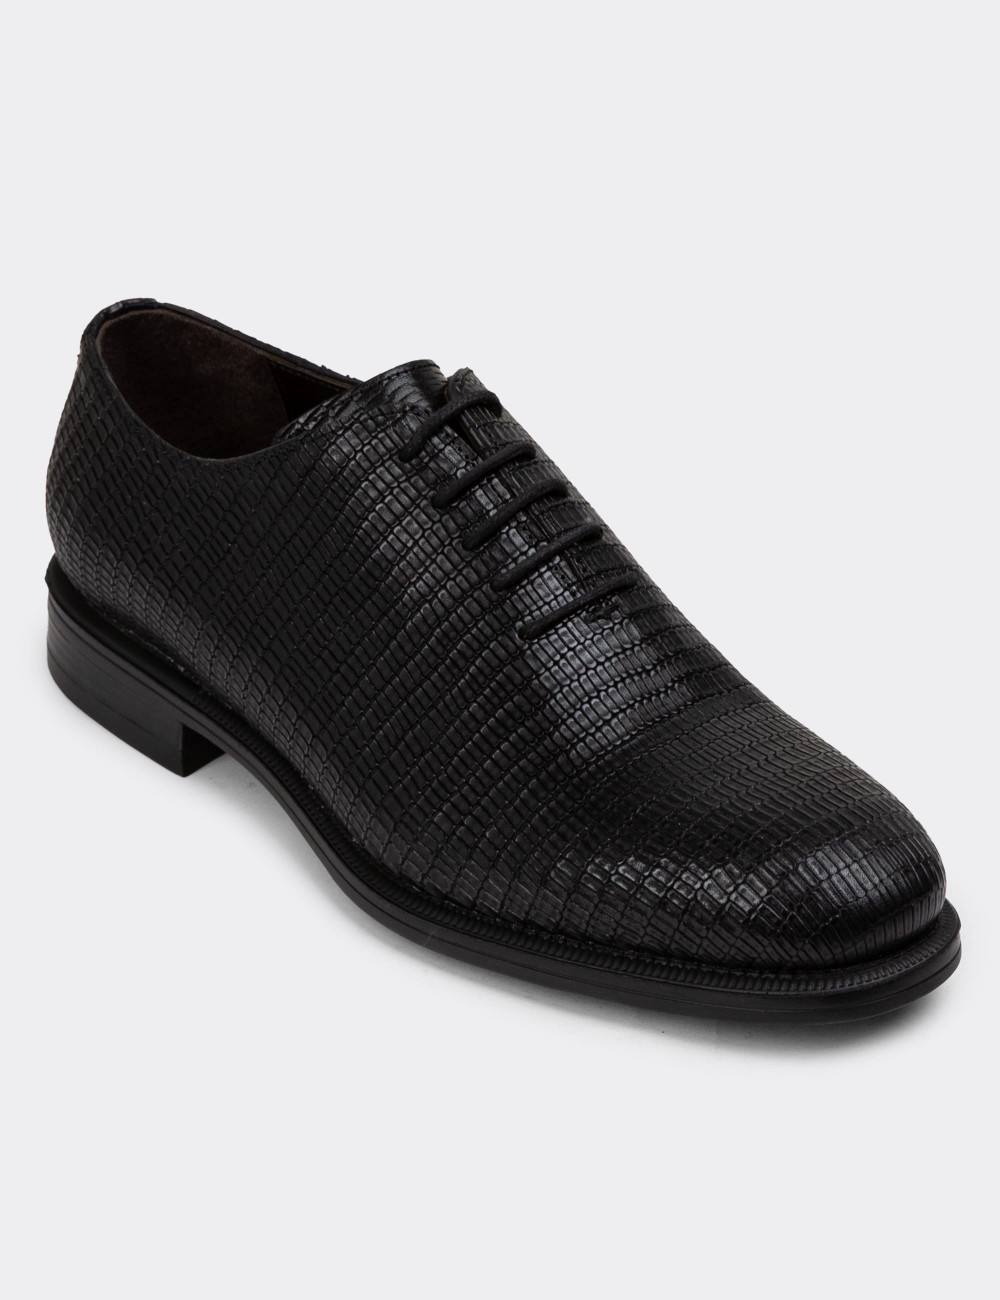 Hakiki Deri Siyah Özel Seri Erkek Klasik Ayakkabı - 01830MSYHC06